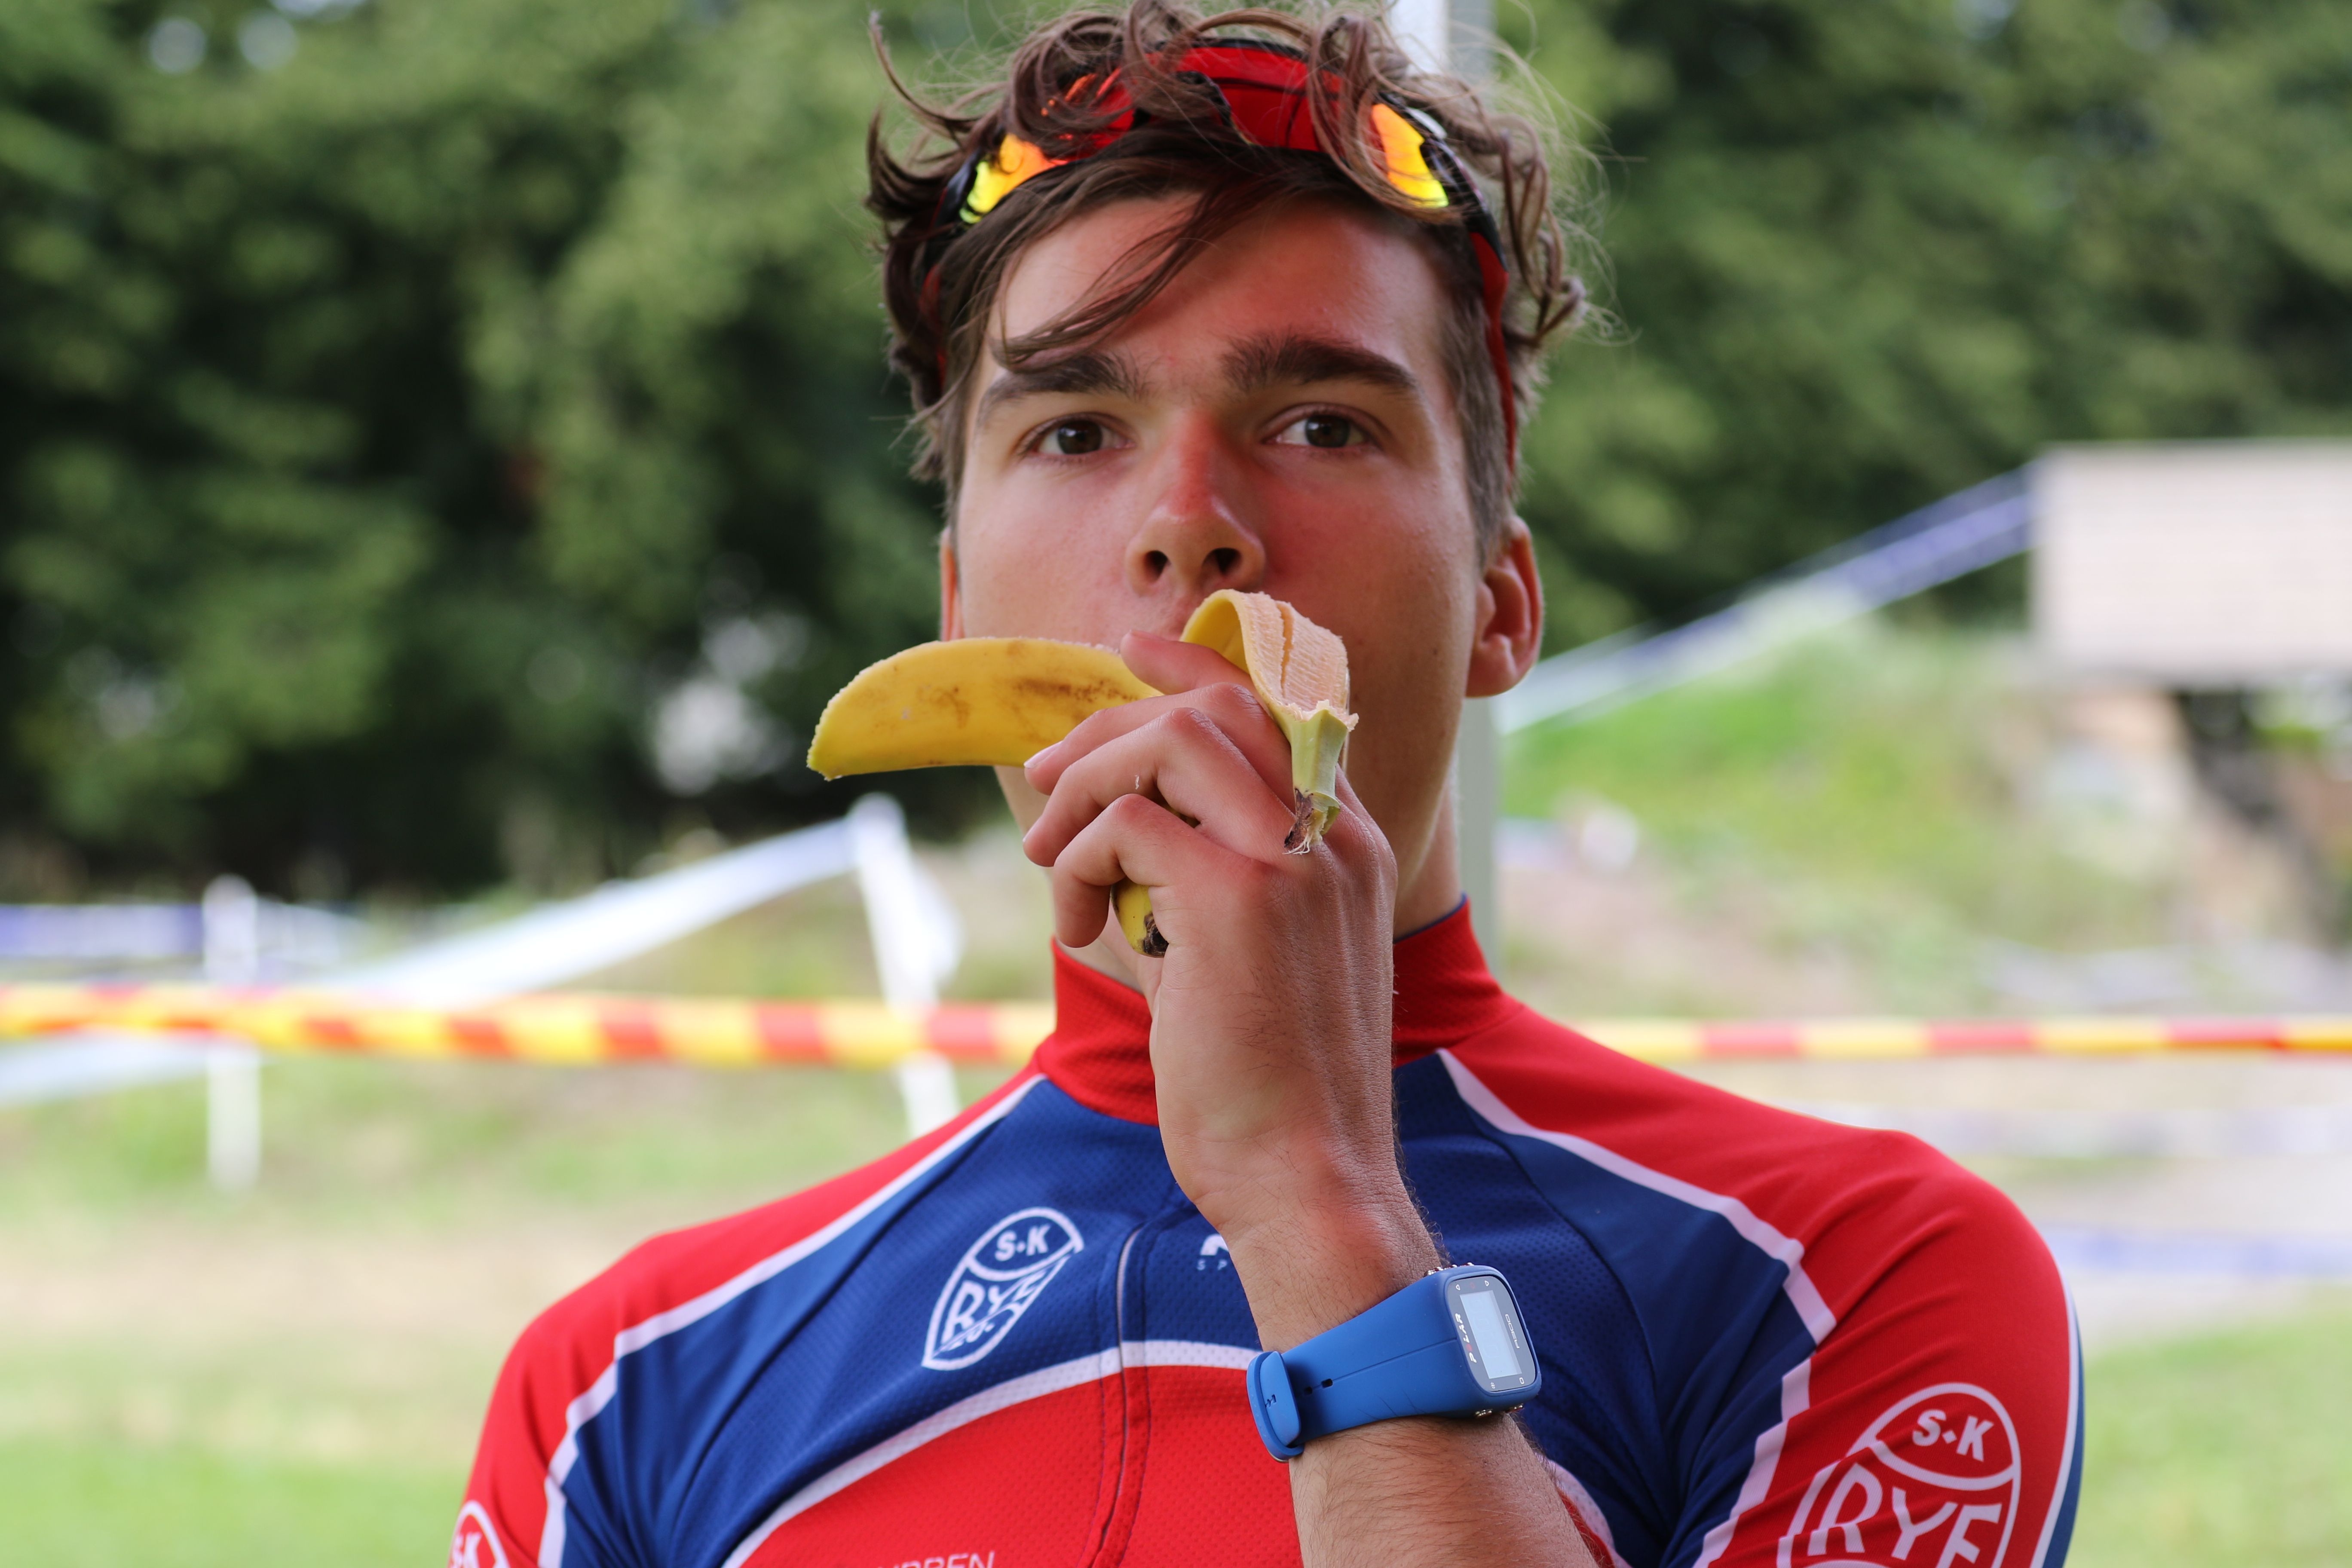 denne bananen spiste jeg før rittet i Horten, hvor jeg syklet veldig fort, så nå skal jeg bare spise bananer inn mot rittet på søndag!